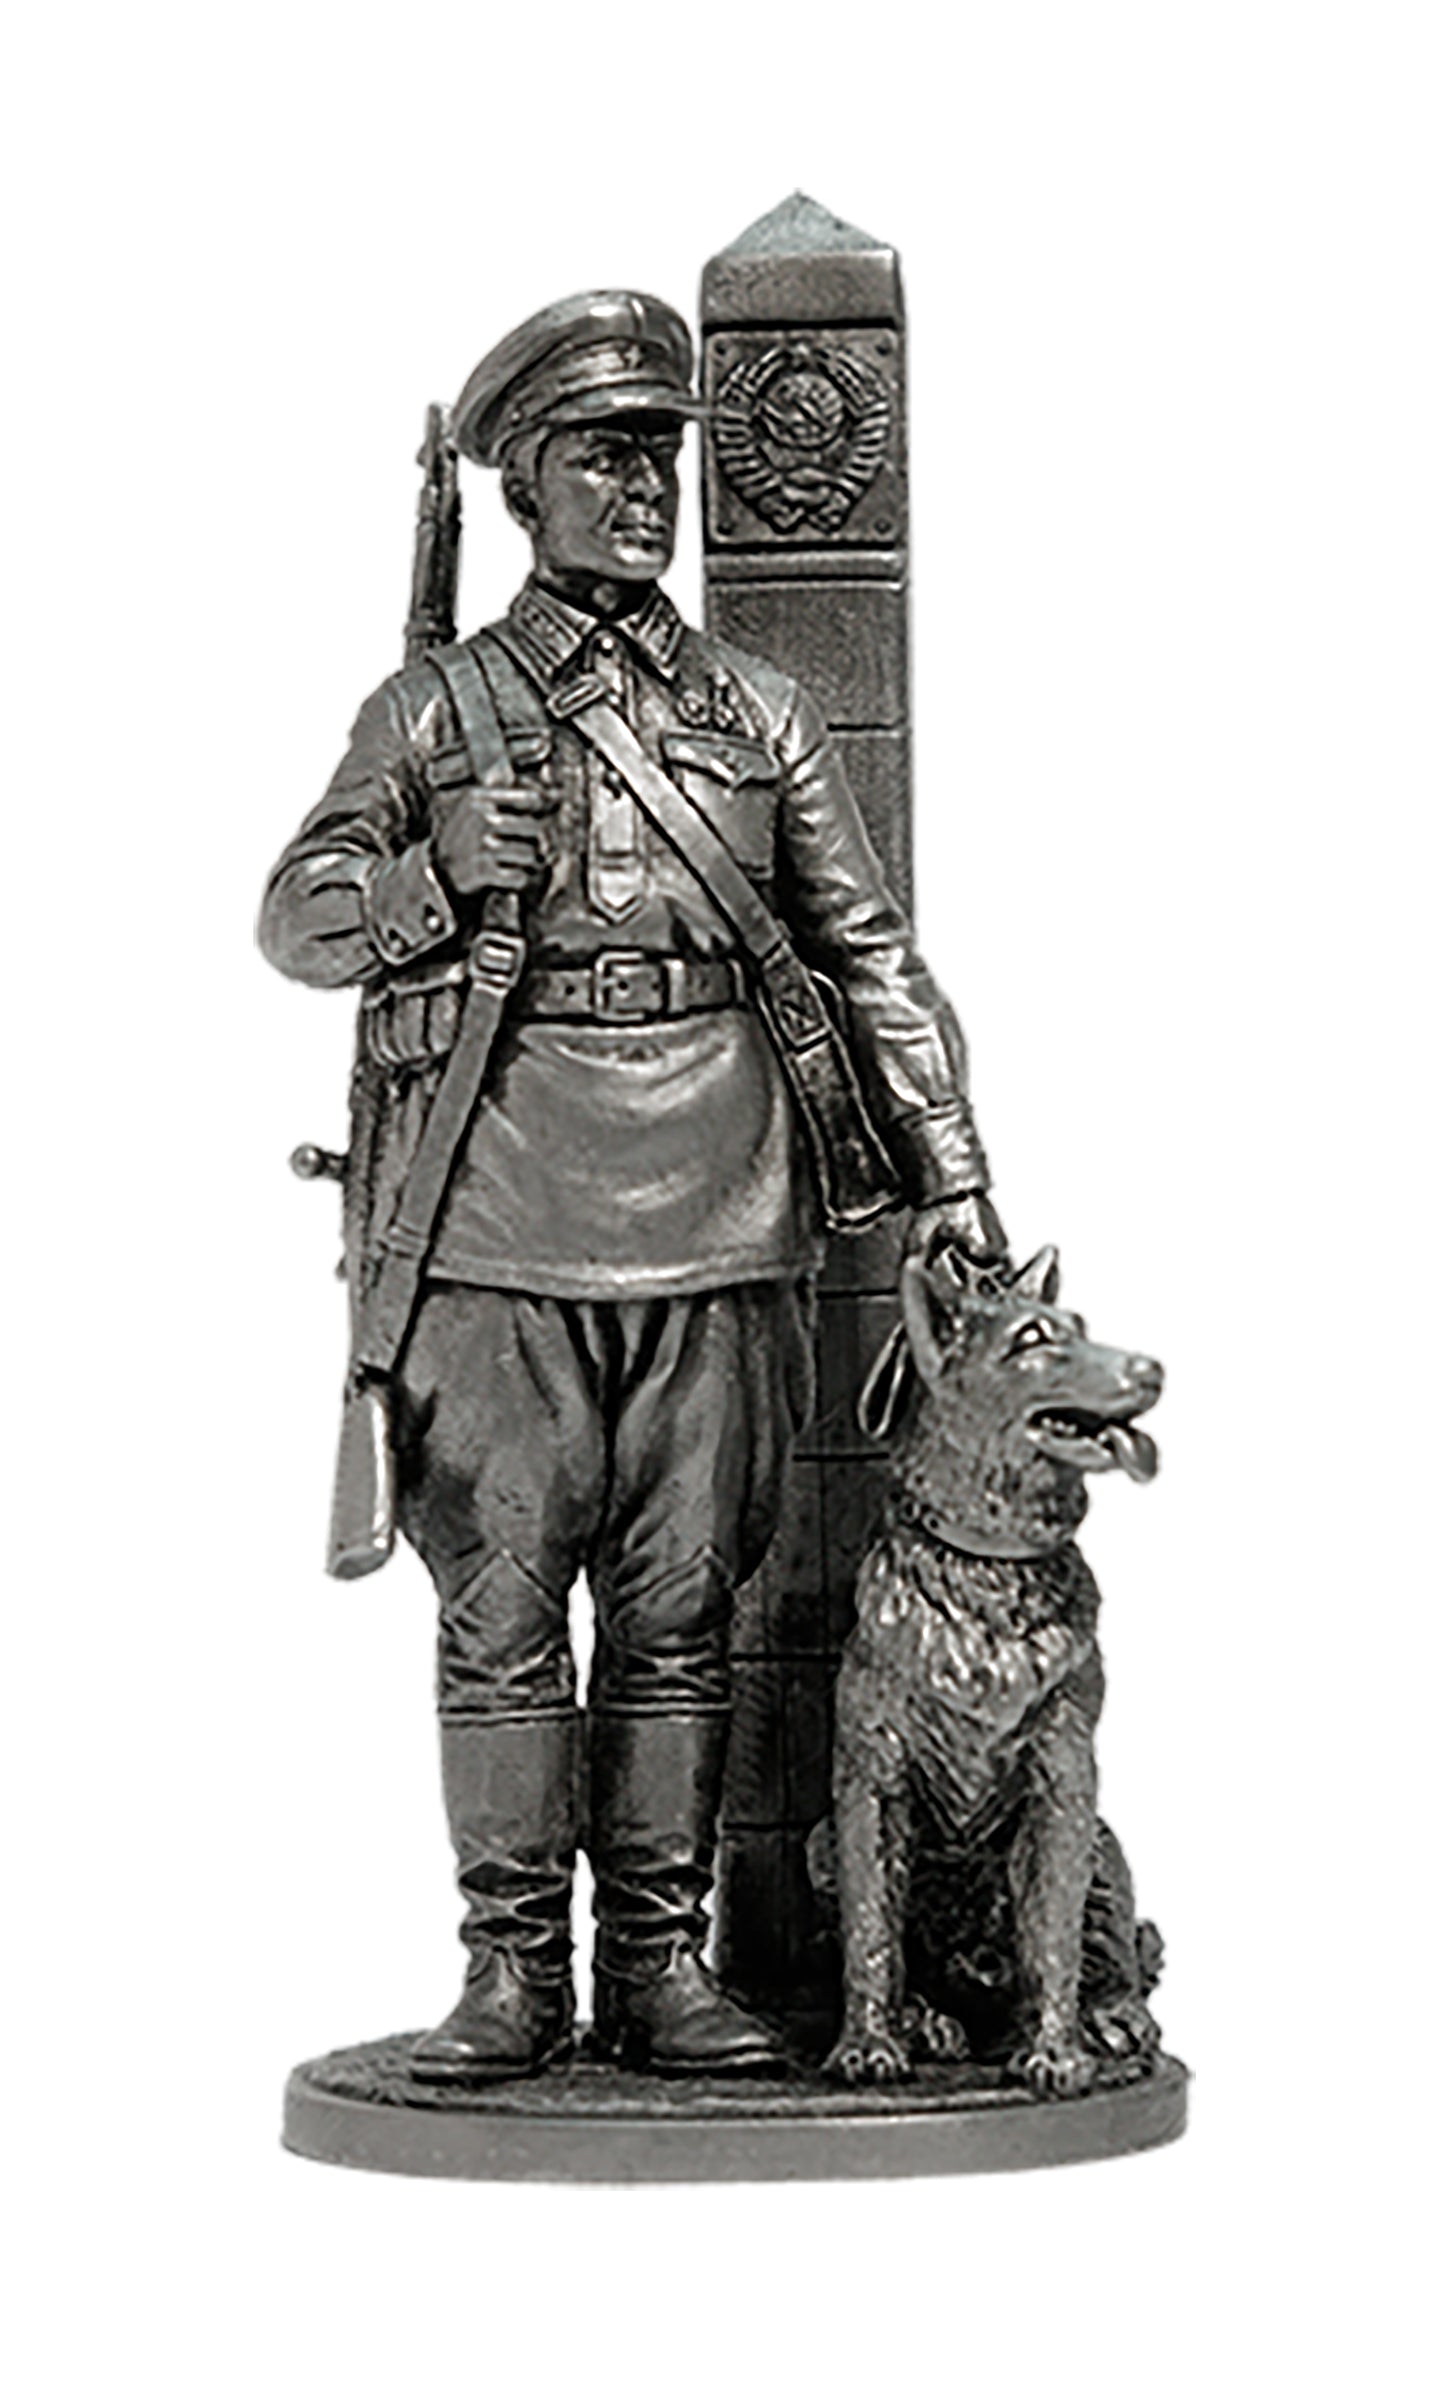 EK-WW2-23 - младший сержант Пограничных войск НКВД с собакой, 1941 г. СССР